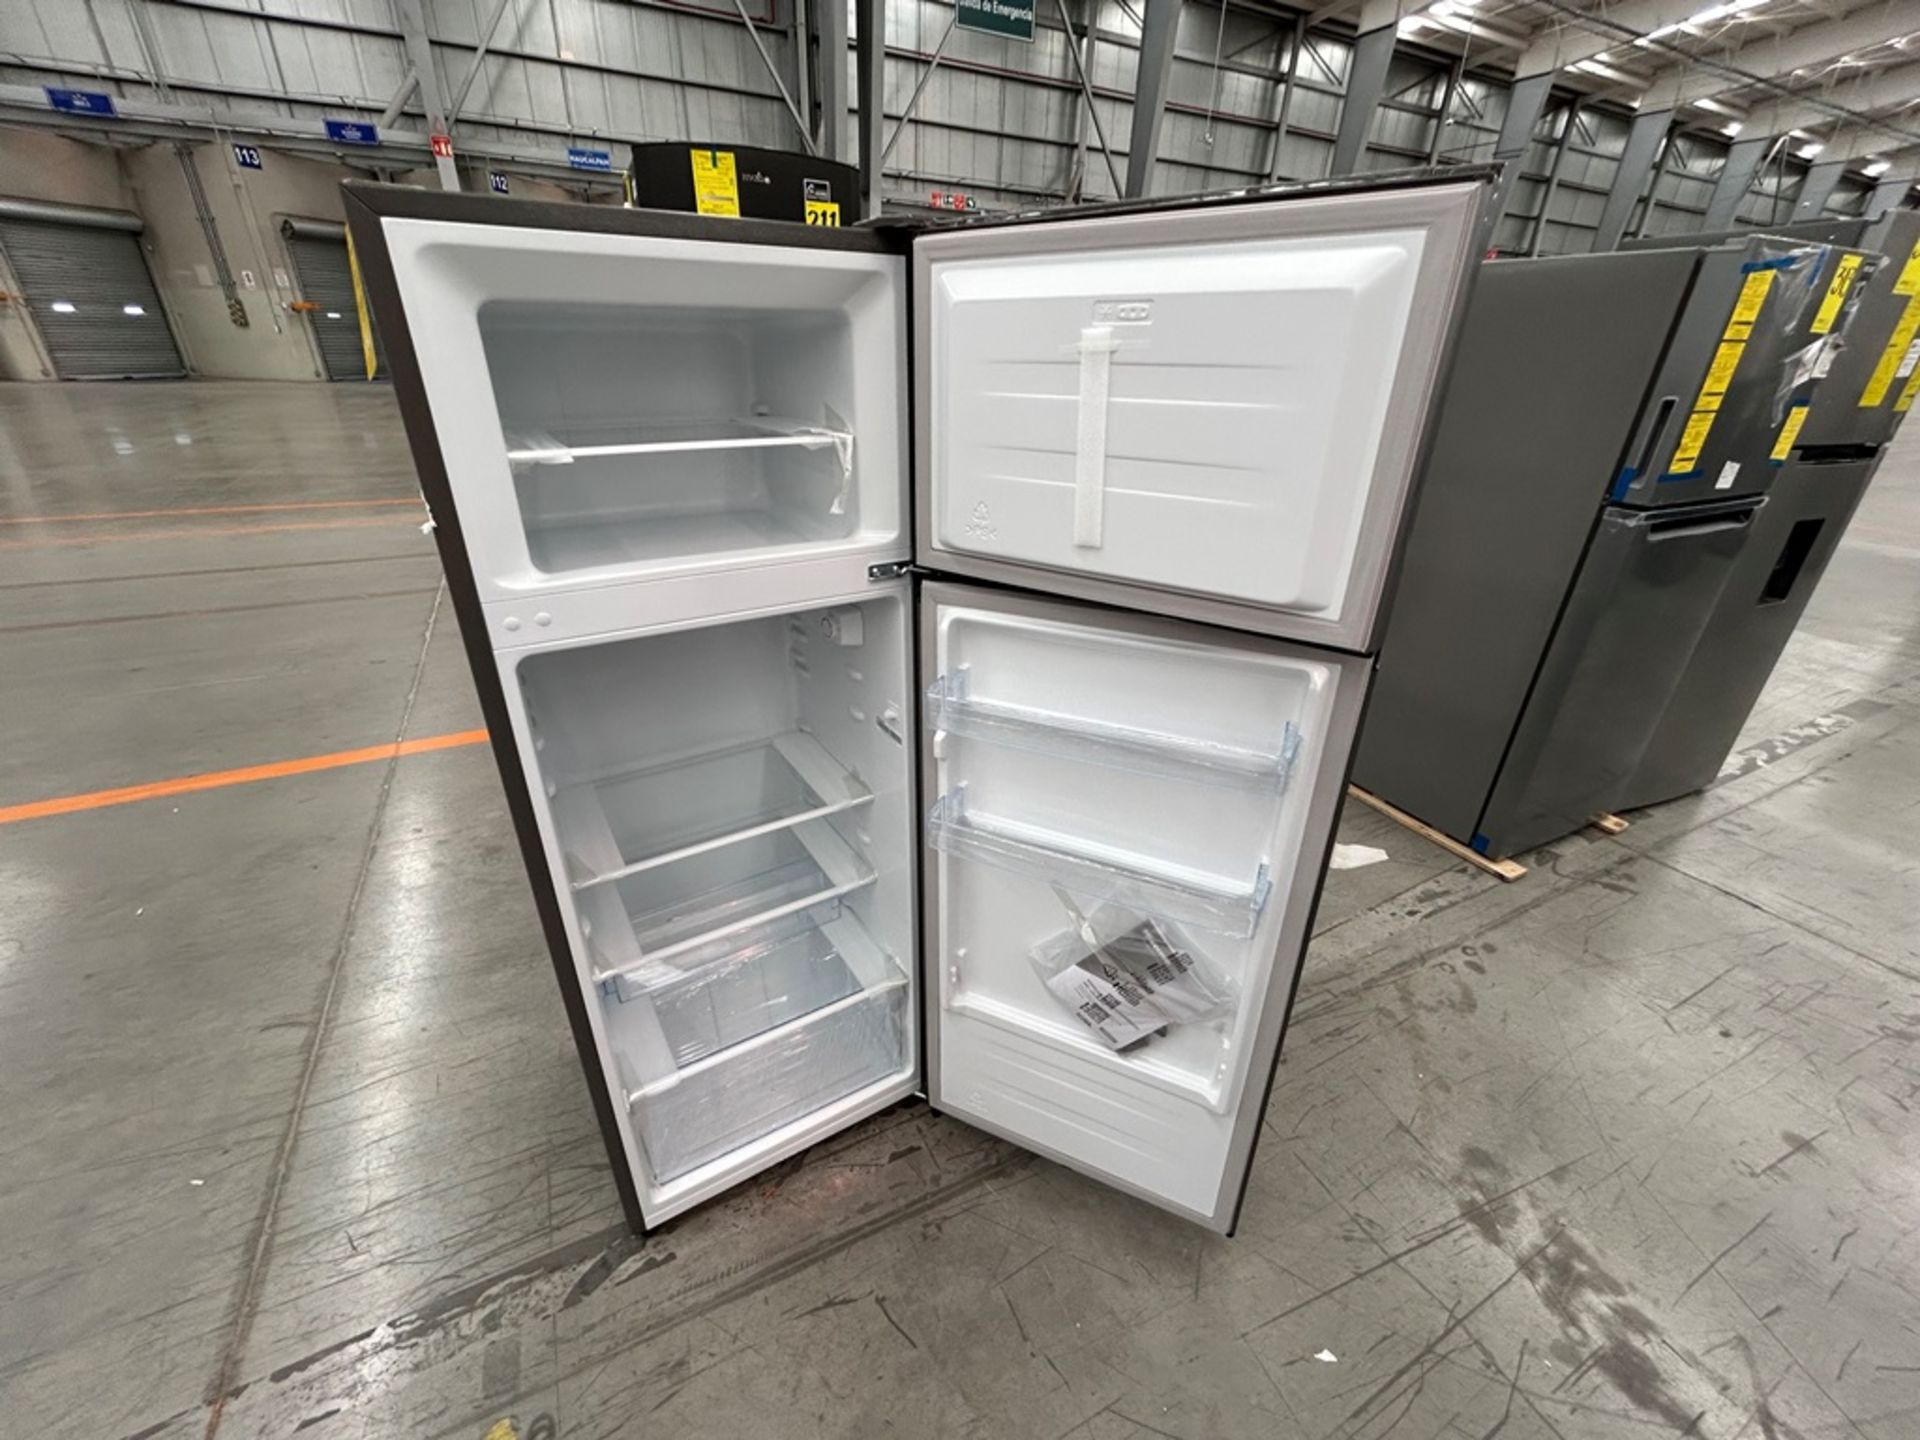 Lote de 2 Refrigeradores, contiene: 1 Refrigerador Marca HISENSE, Modelo RT80D6AGX Serie VP20148, C - Image 5 of 6